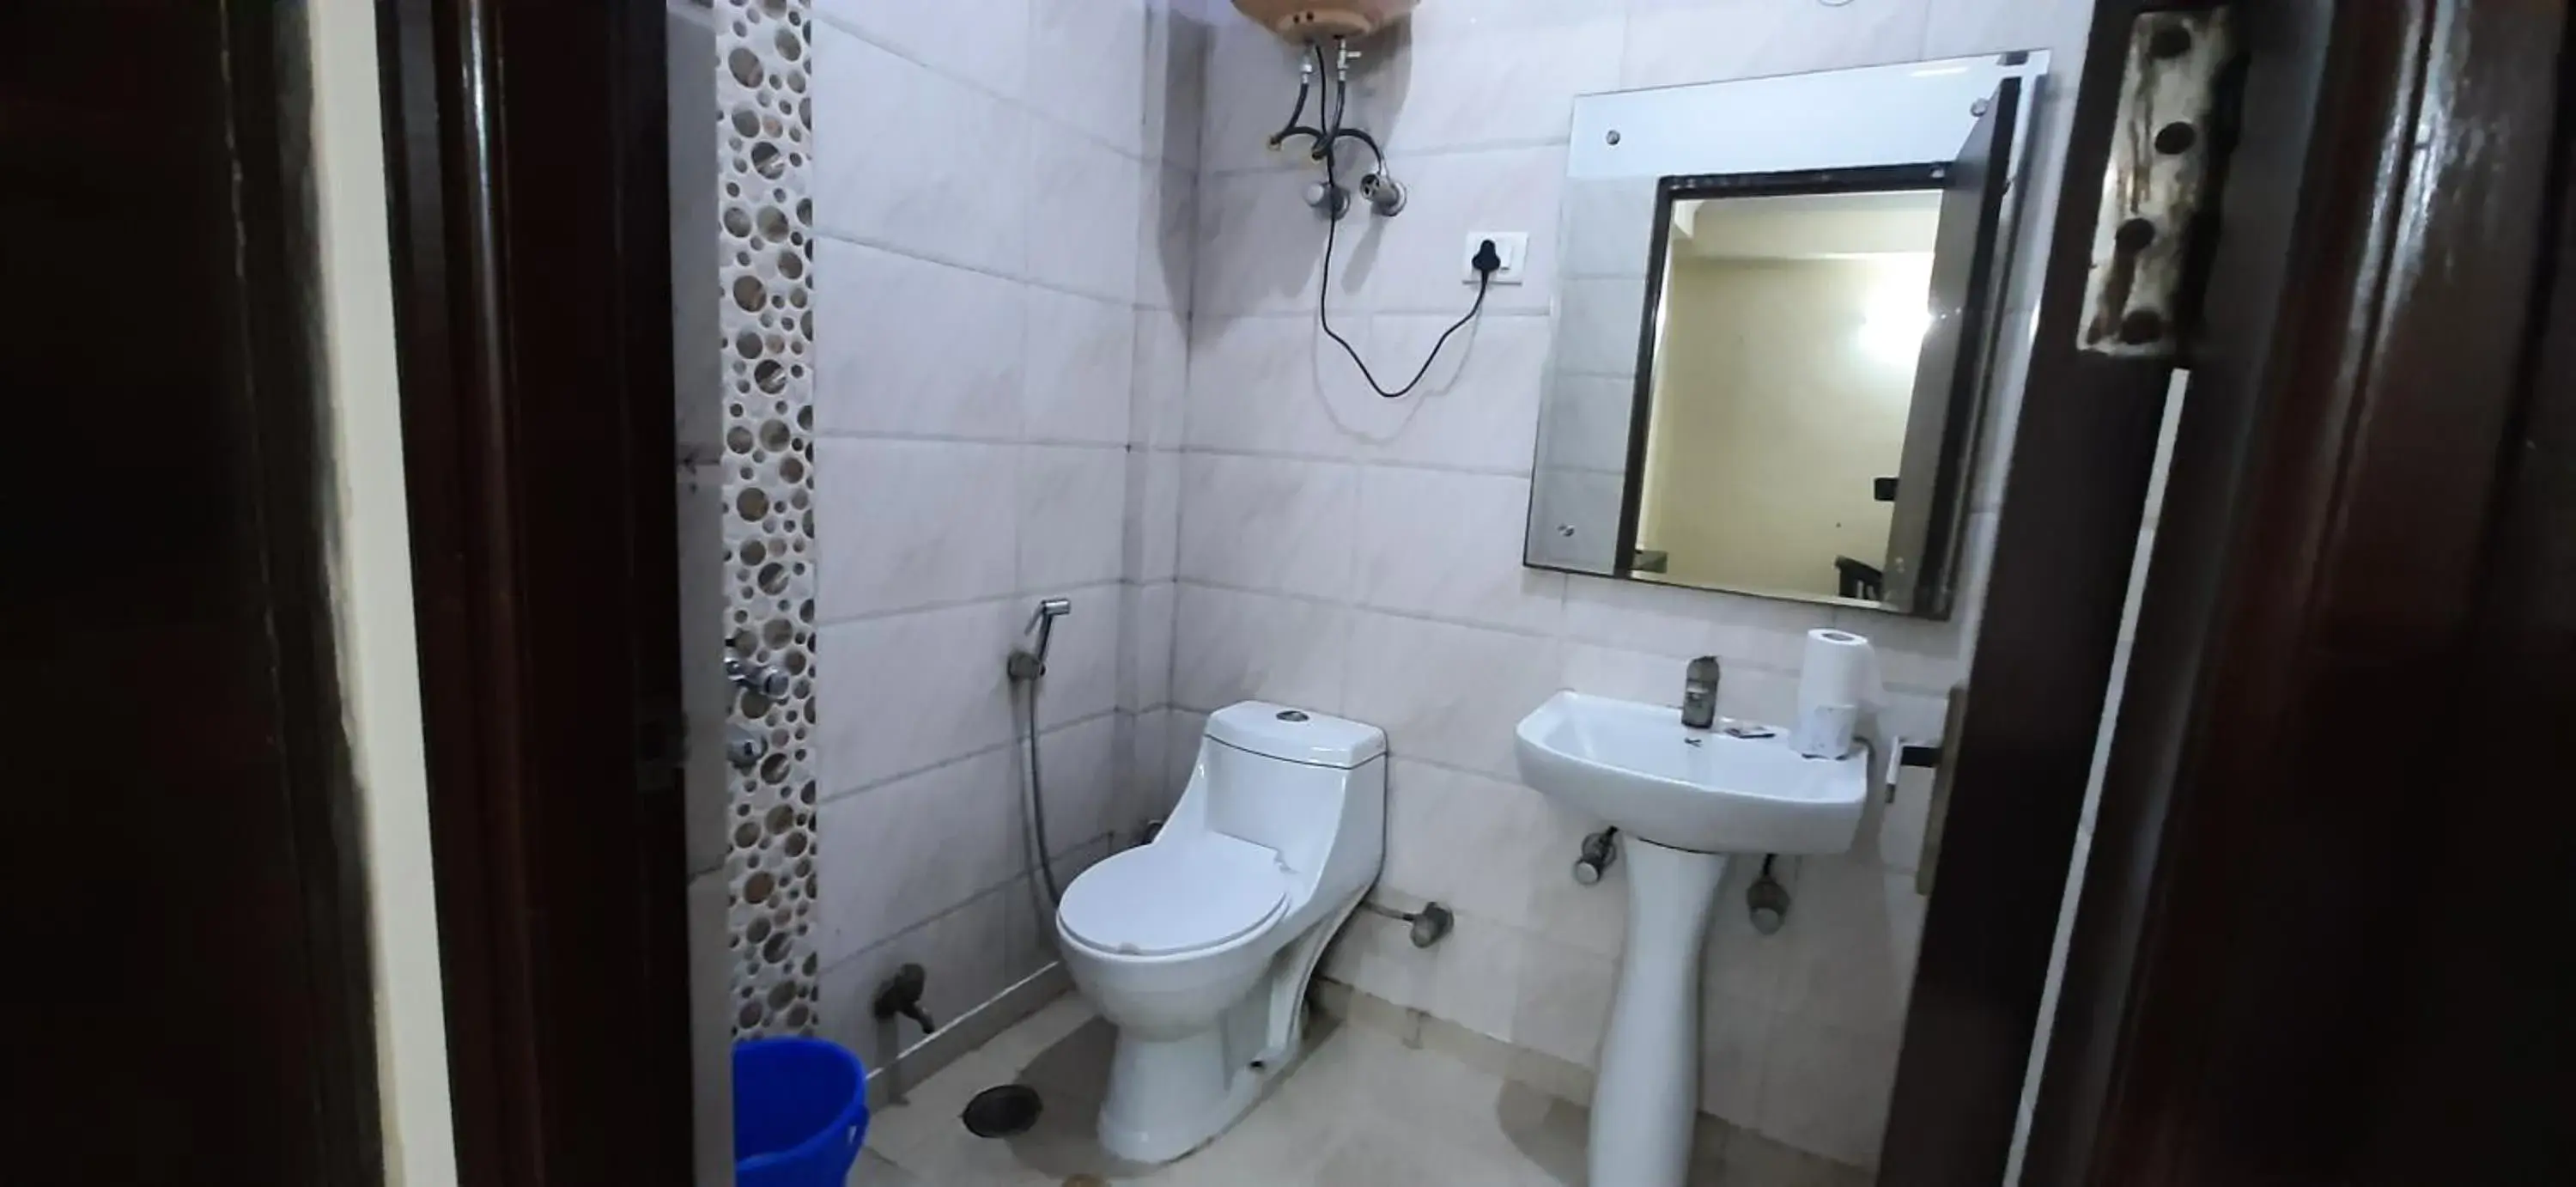 Bathroom in Hotel Kundan Palace